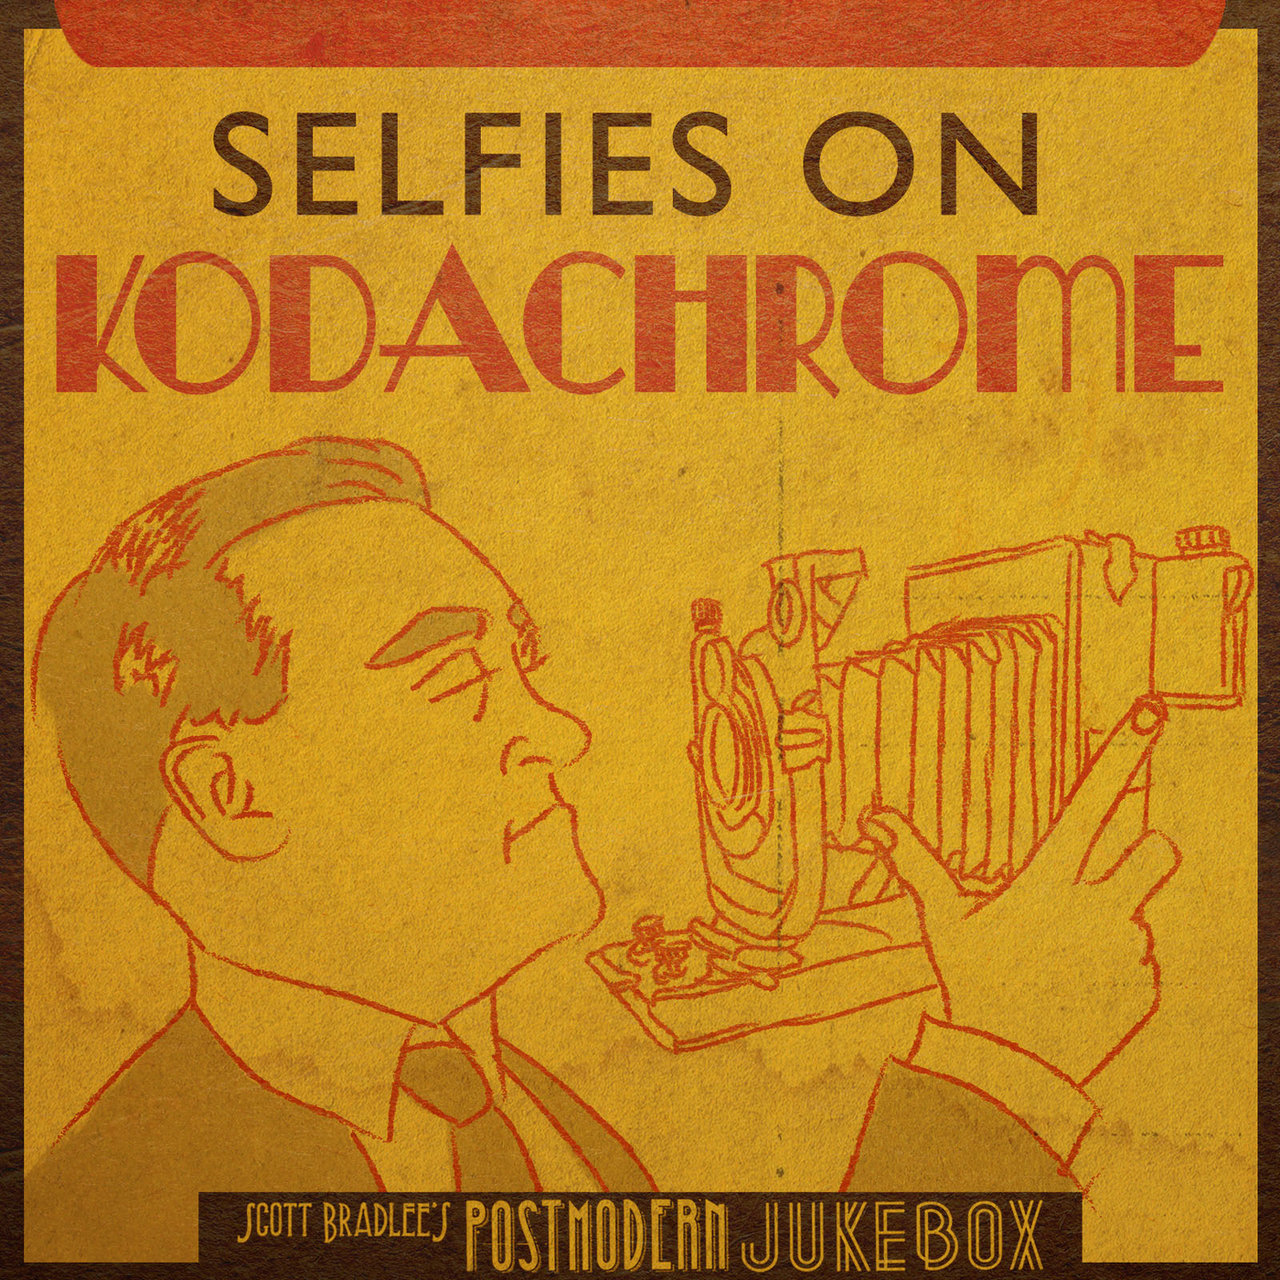 Postmodern Jukebox Selfies on Kodachrome cover artwork